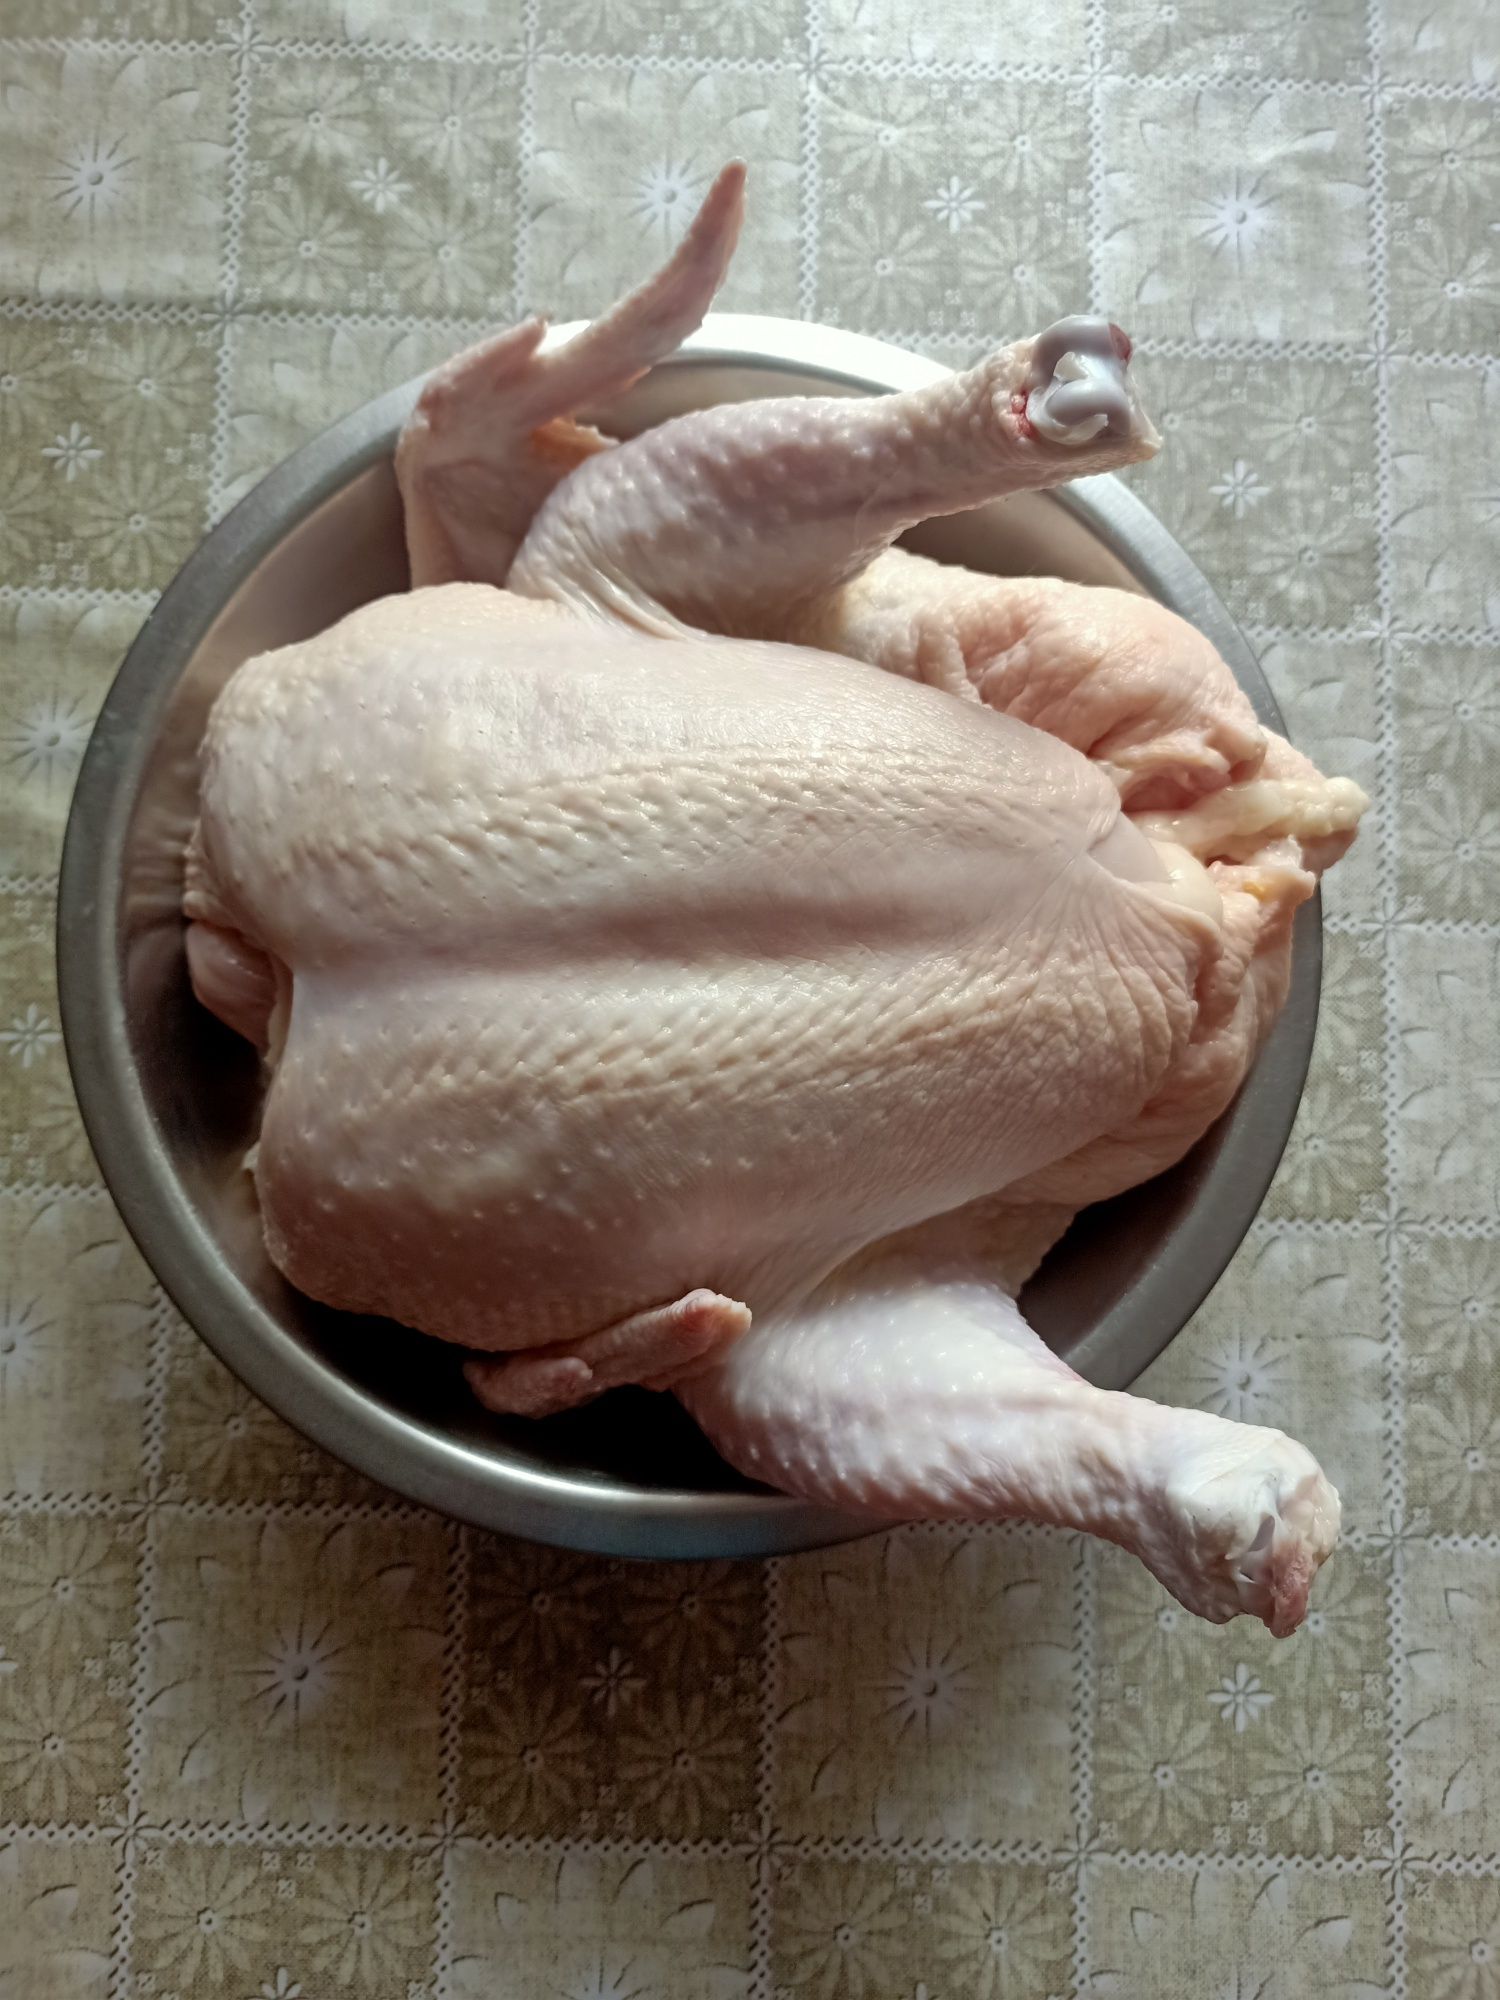 Tuszki kurczaka Brolery z domowego gospodarstwa bez antybiotyków